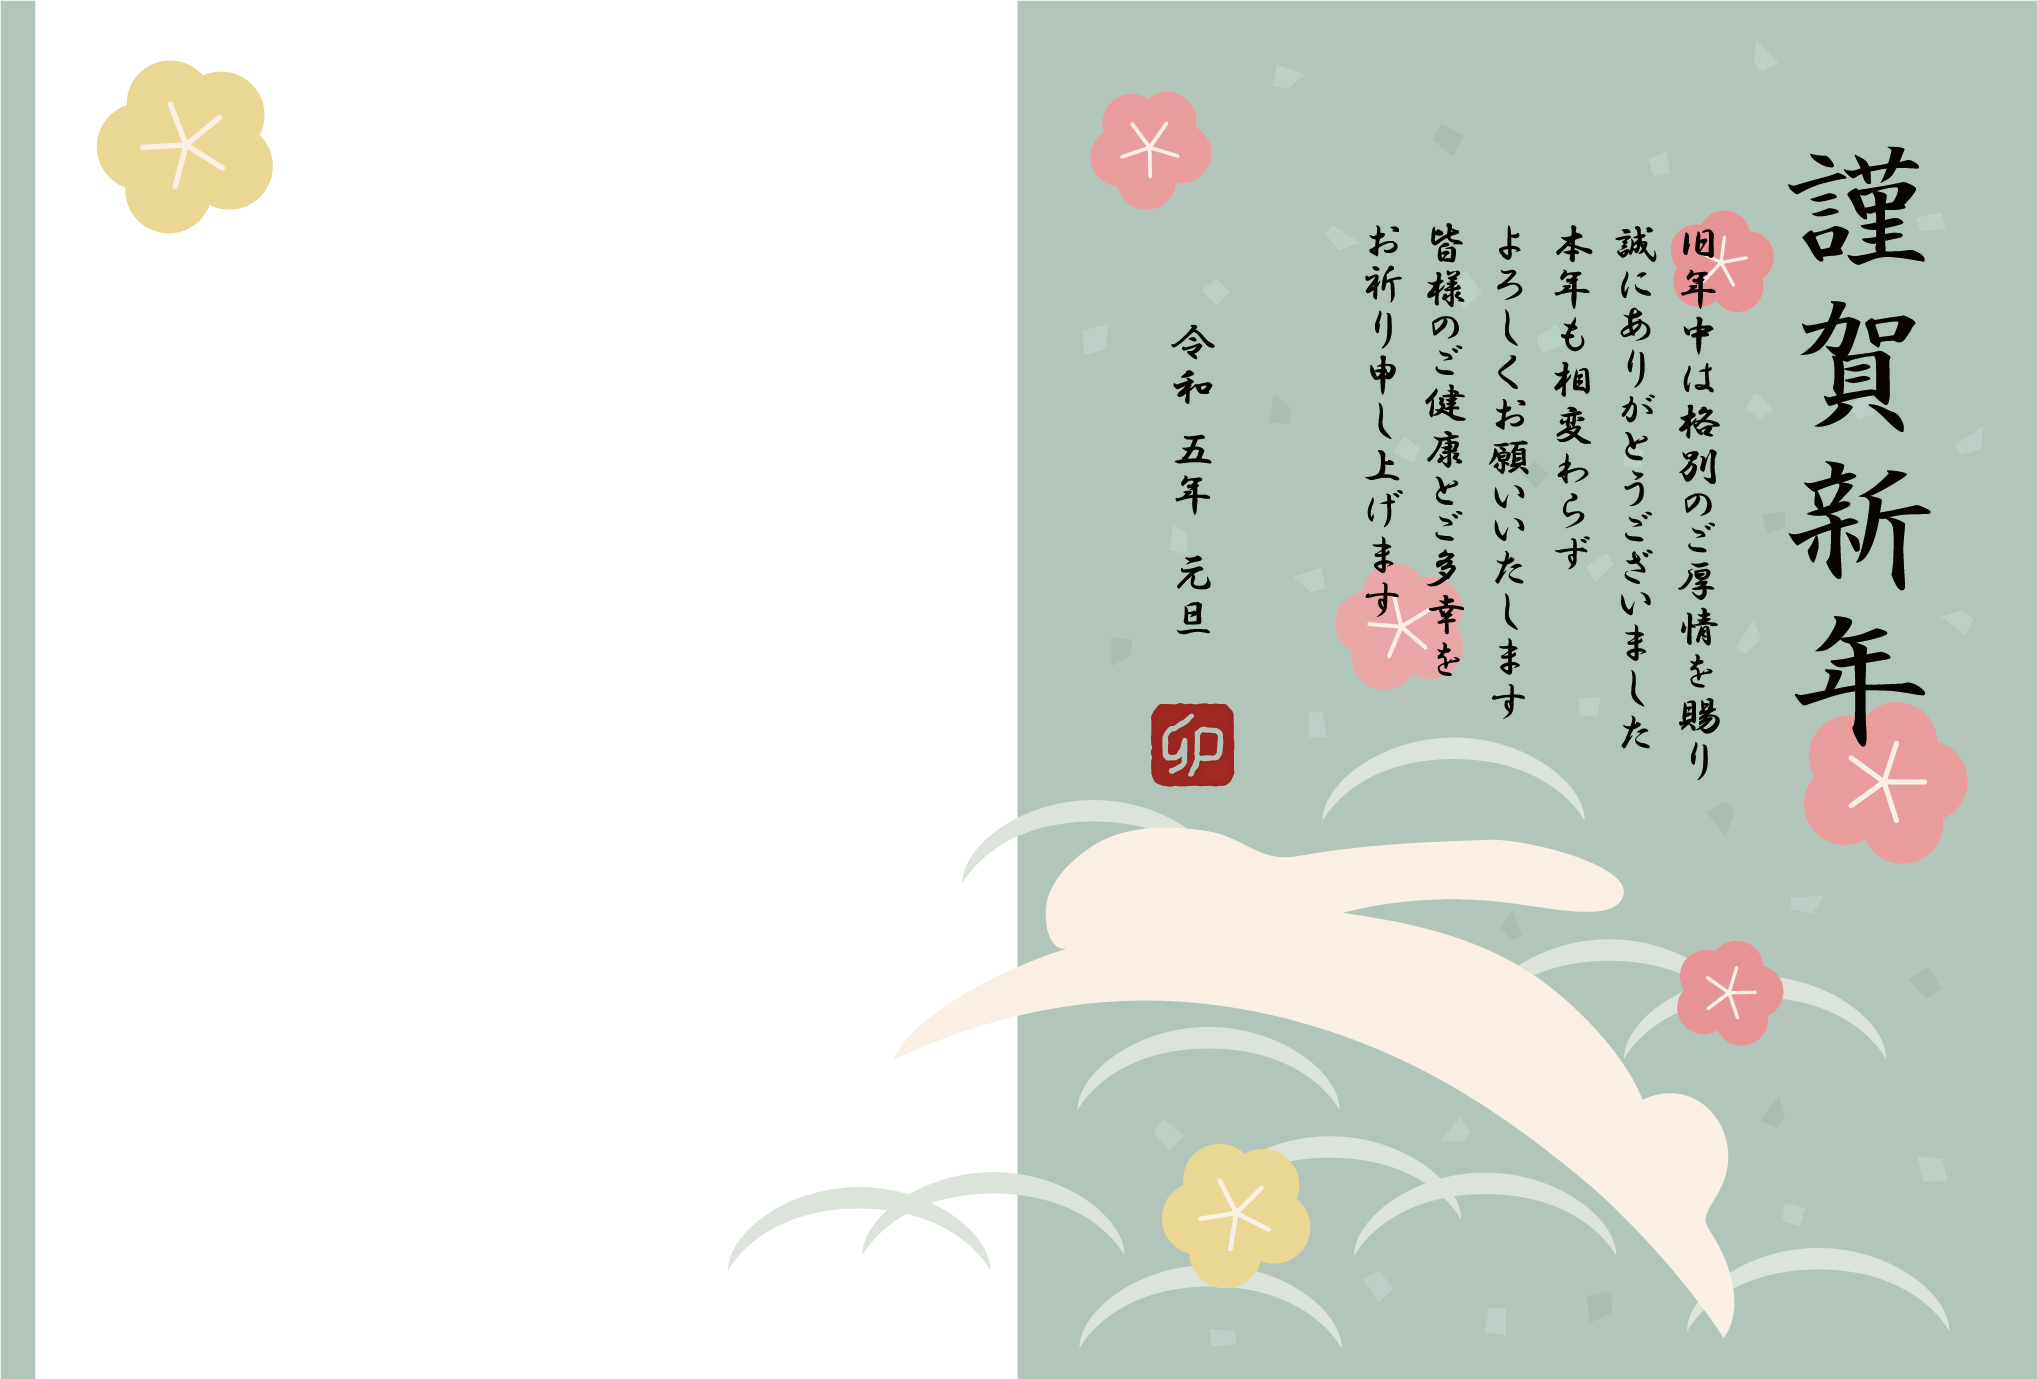 【写真フレーム】横向きの和風デザインの1枚写真が入る卯年の年賀状テンプレート